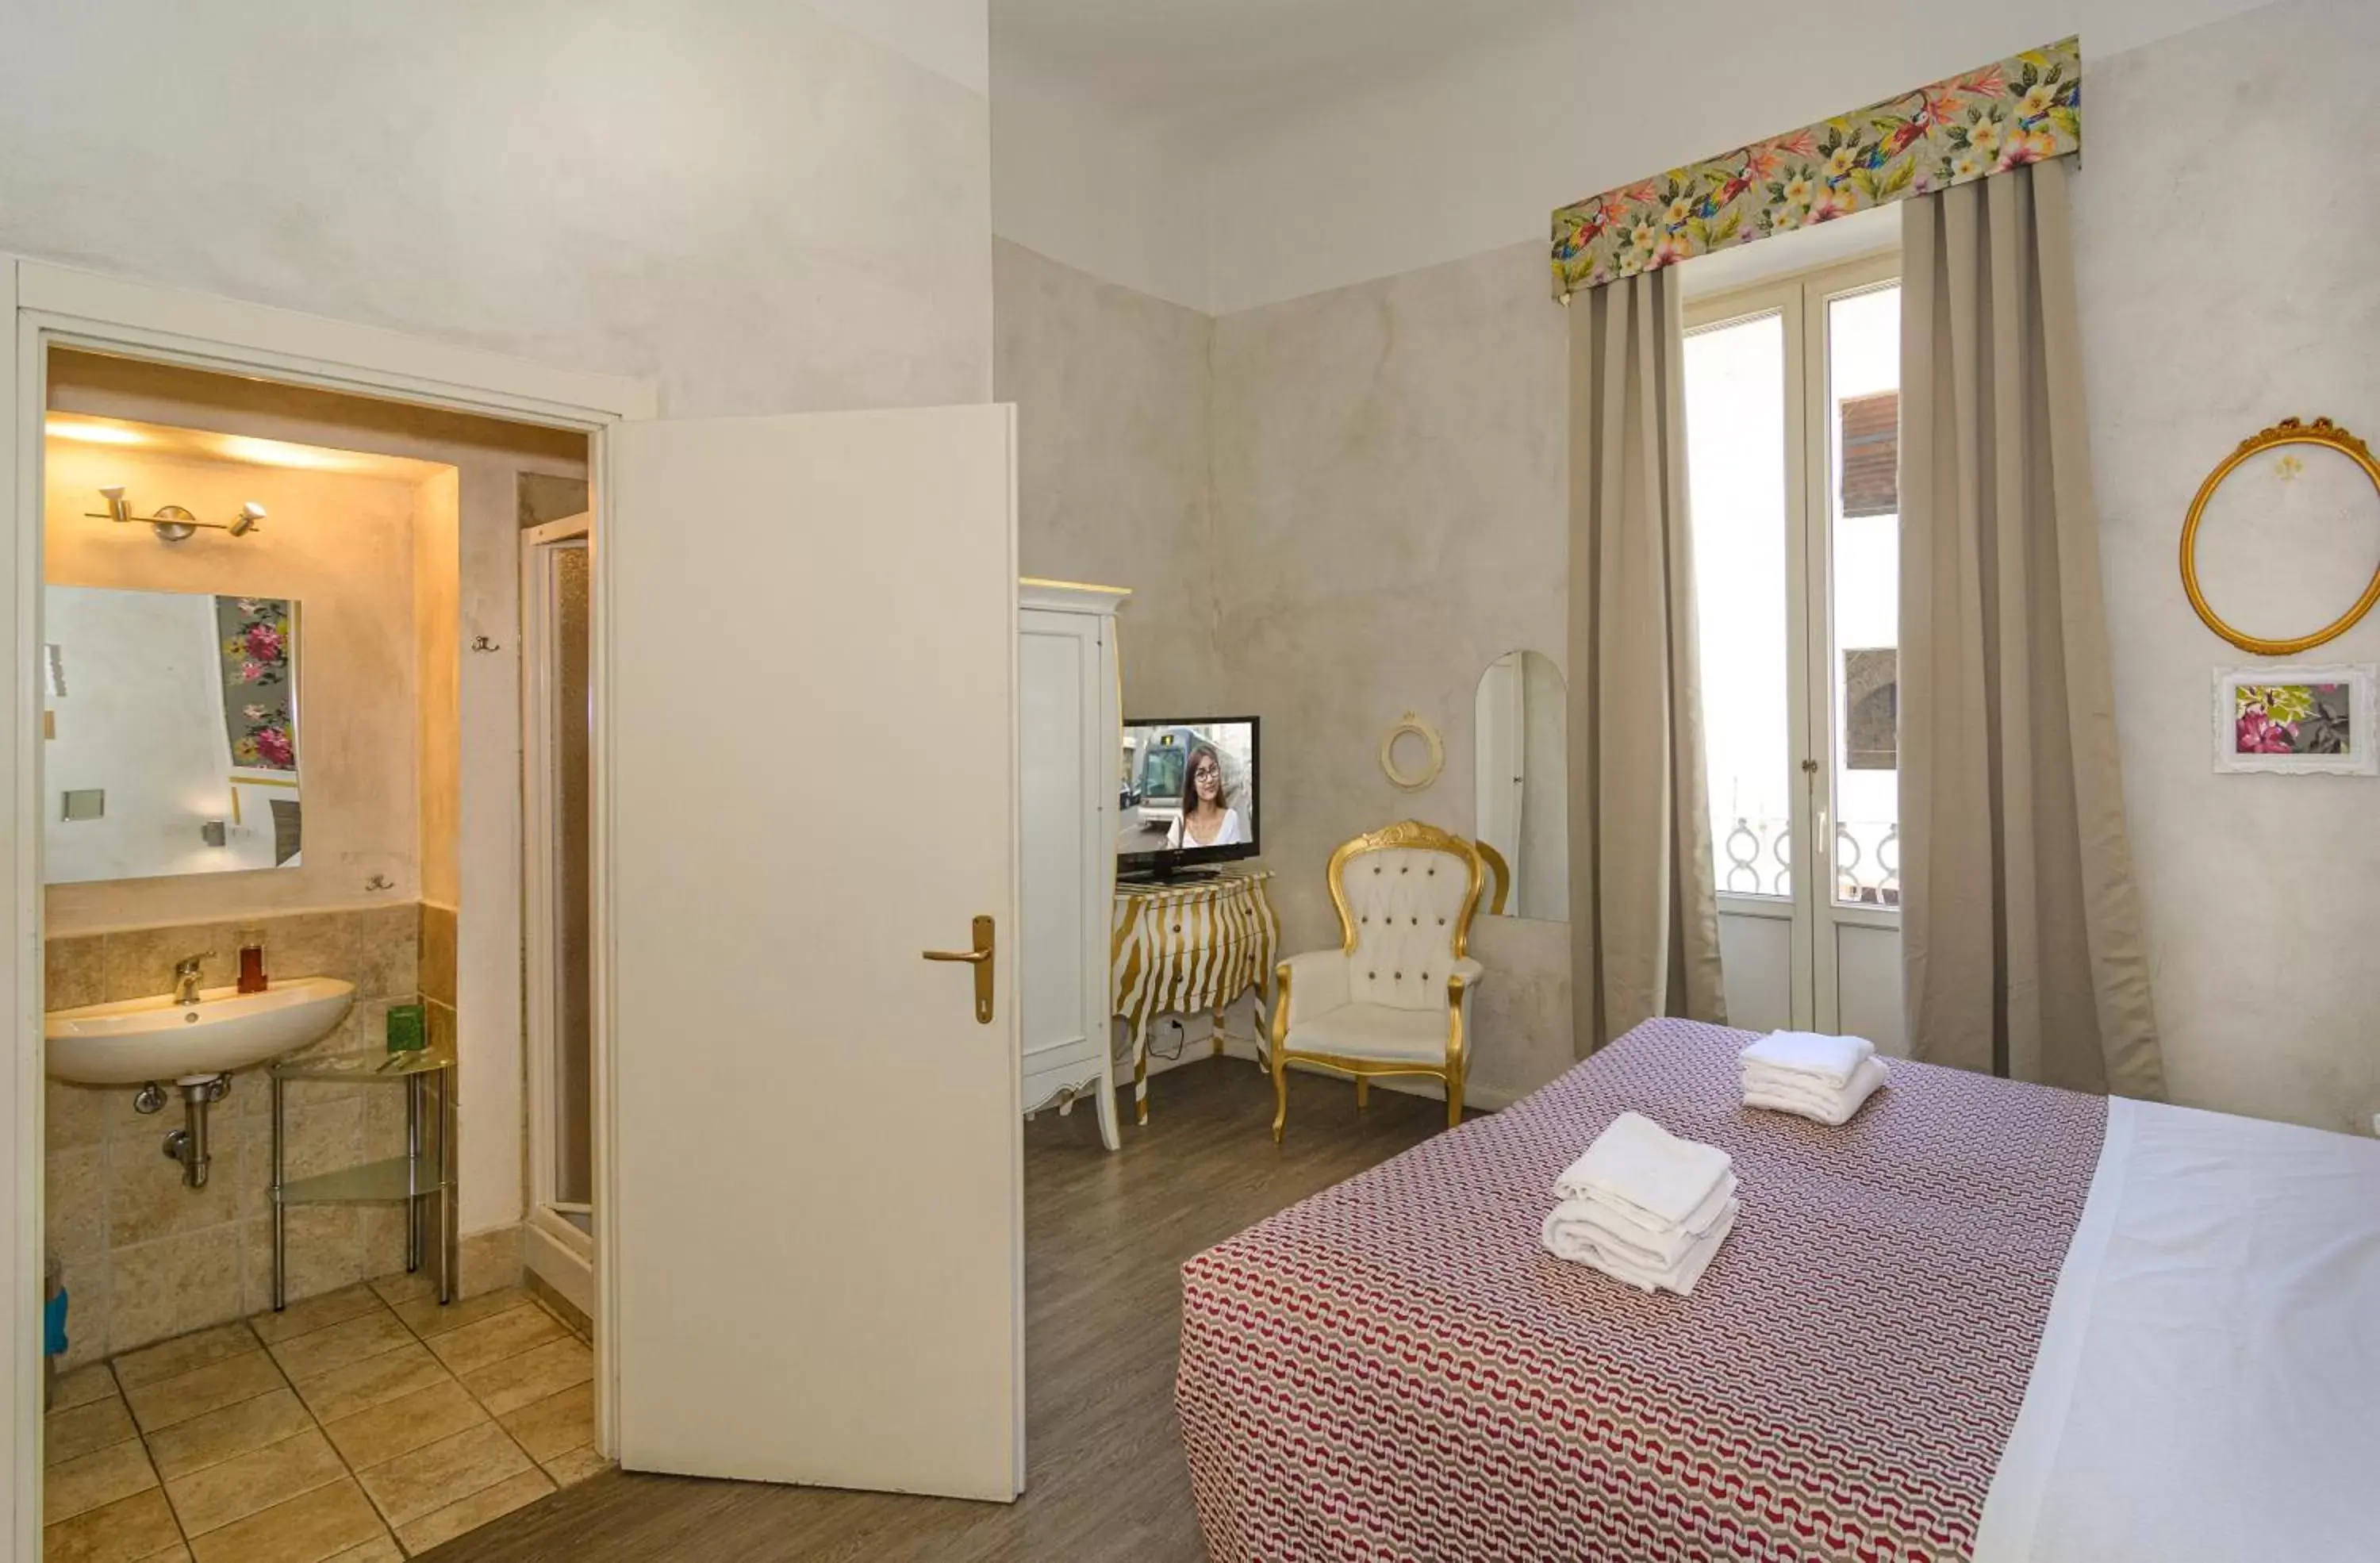 Bedroom in B&B Relais Inn Lucca